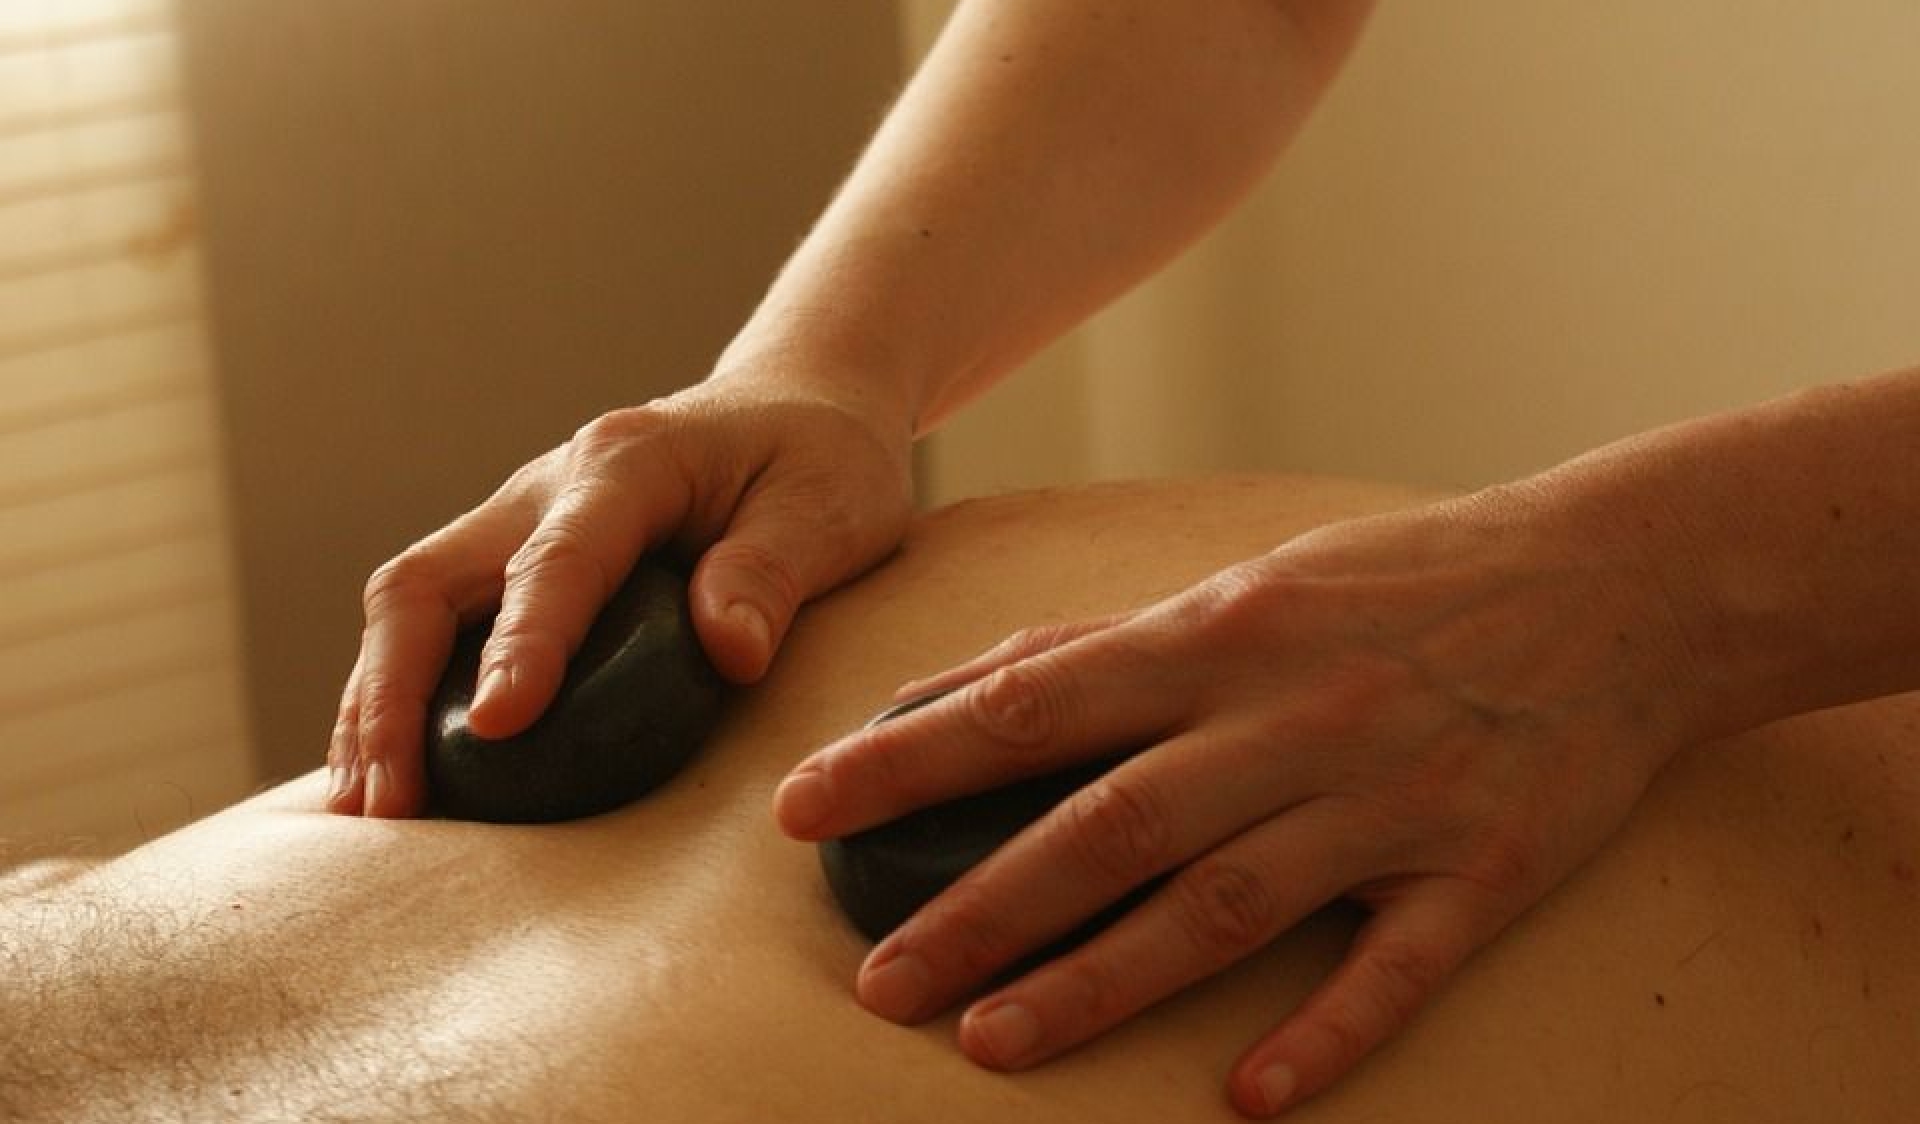 massaggio decontratturante schiena